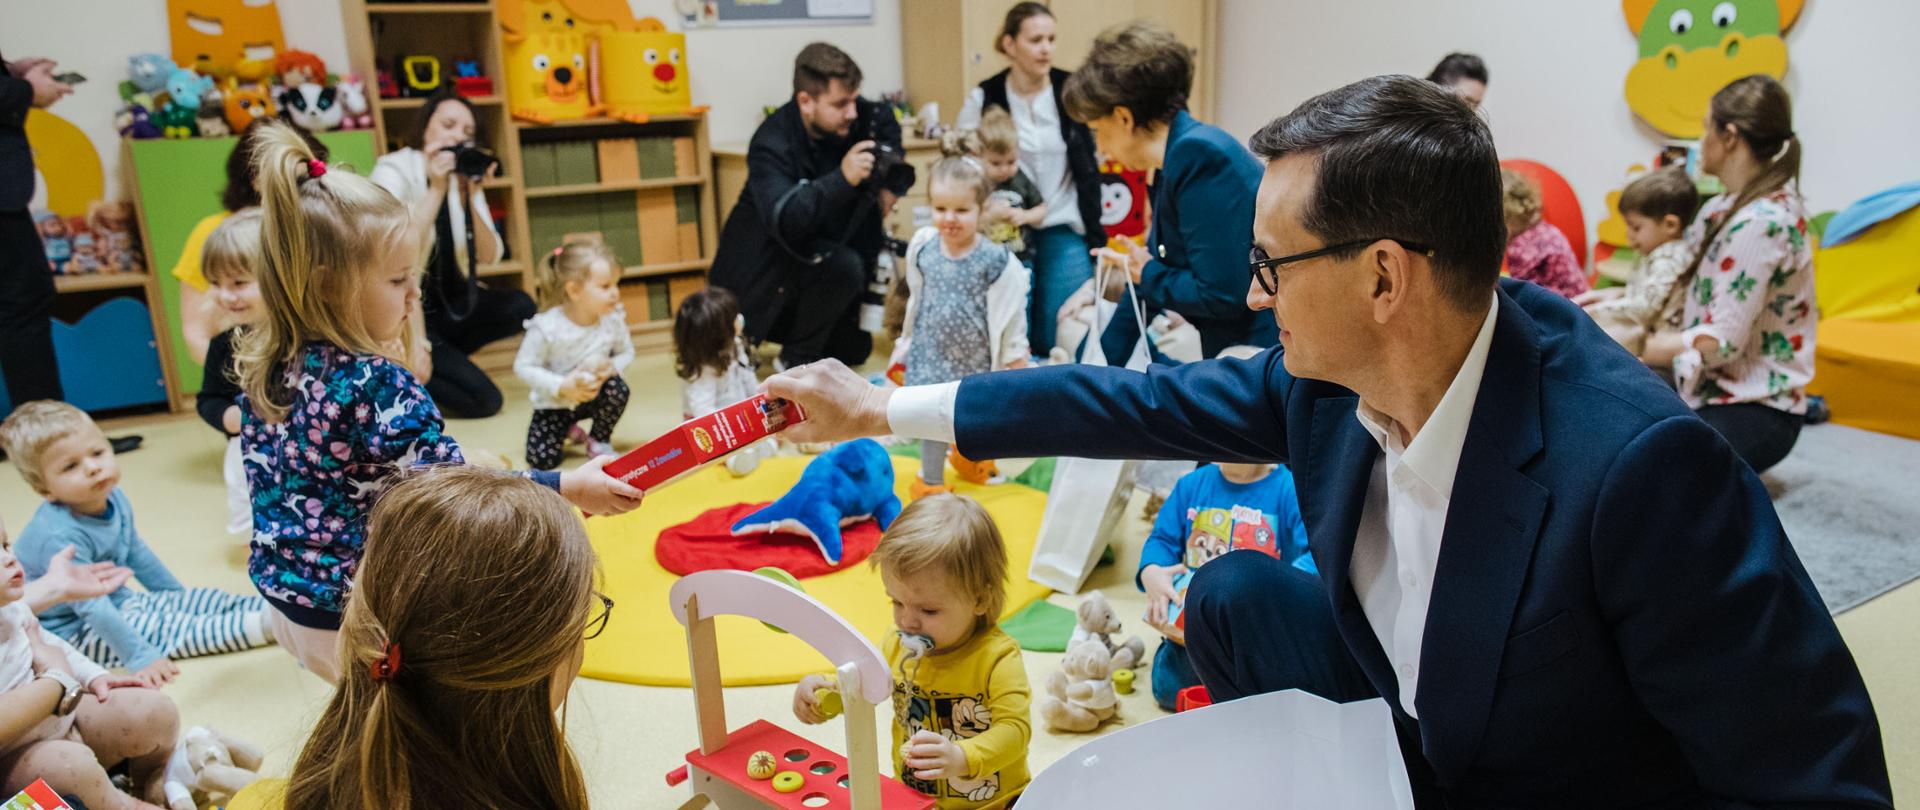 Premier wręcza dzieciom prezenty.